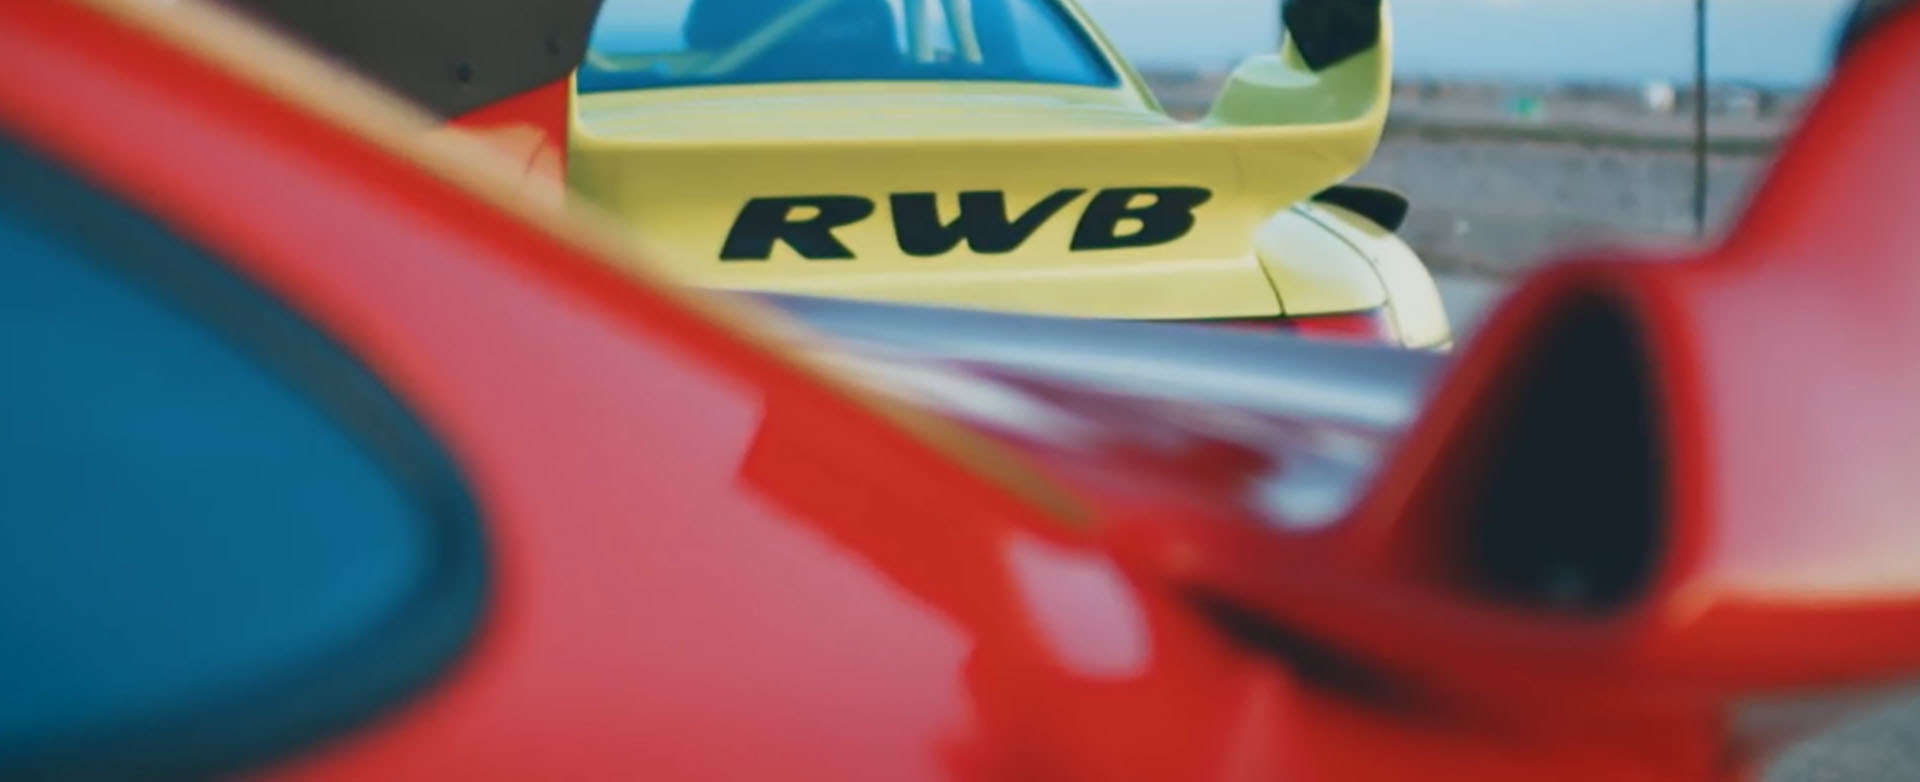 RWB JAPAN - RWB/RAUH-Welt BEGRIFF is a Porsche tuner located in Japan. -  Hello world!